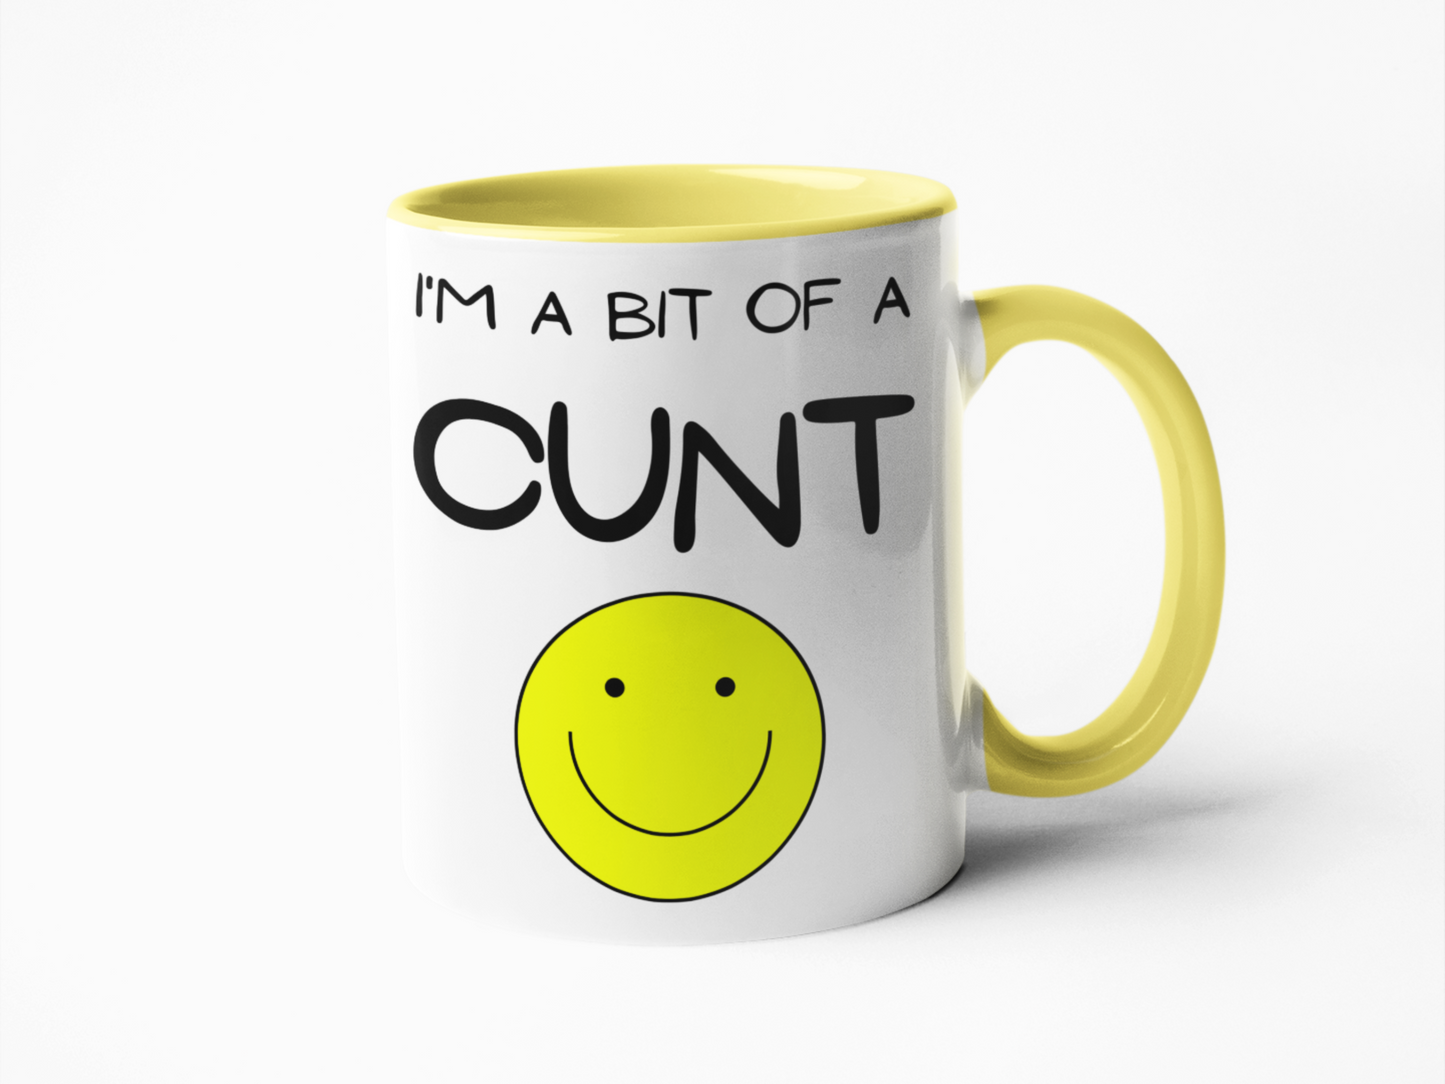 I'm a bit of a cunt funny coffee mug